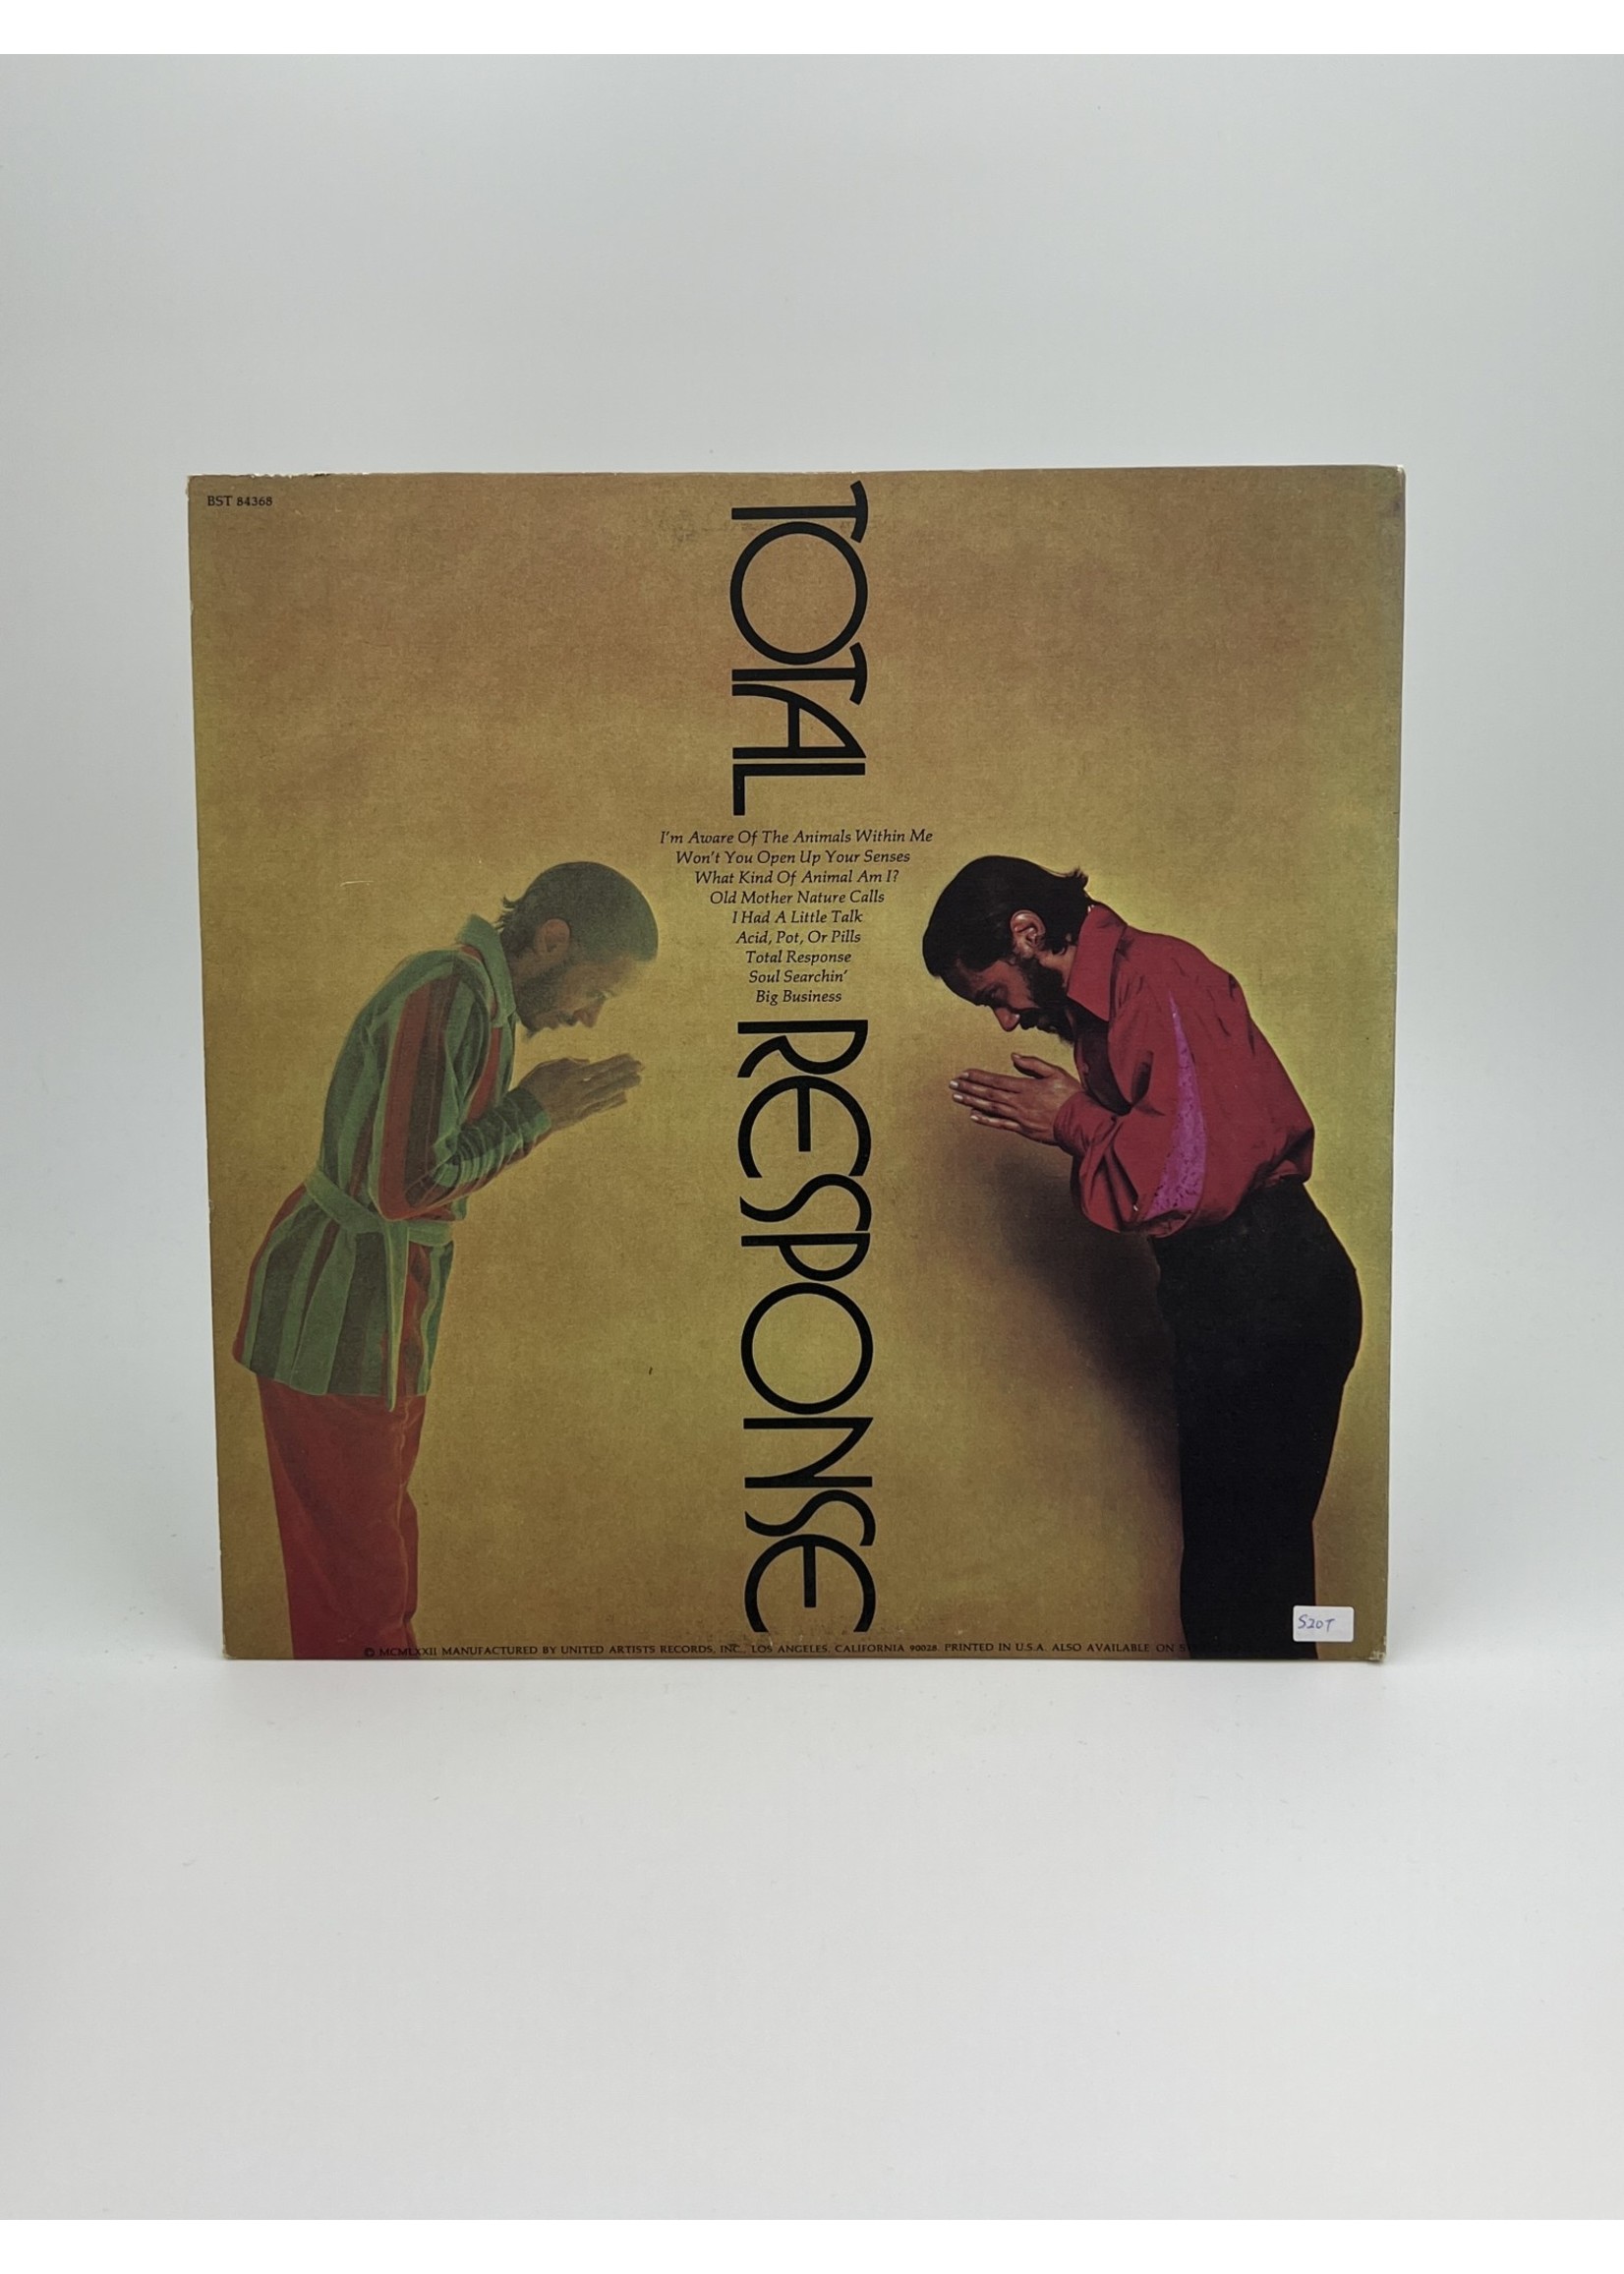 LP Horace Silver Quintet Total Response LP Record